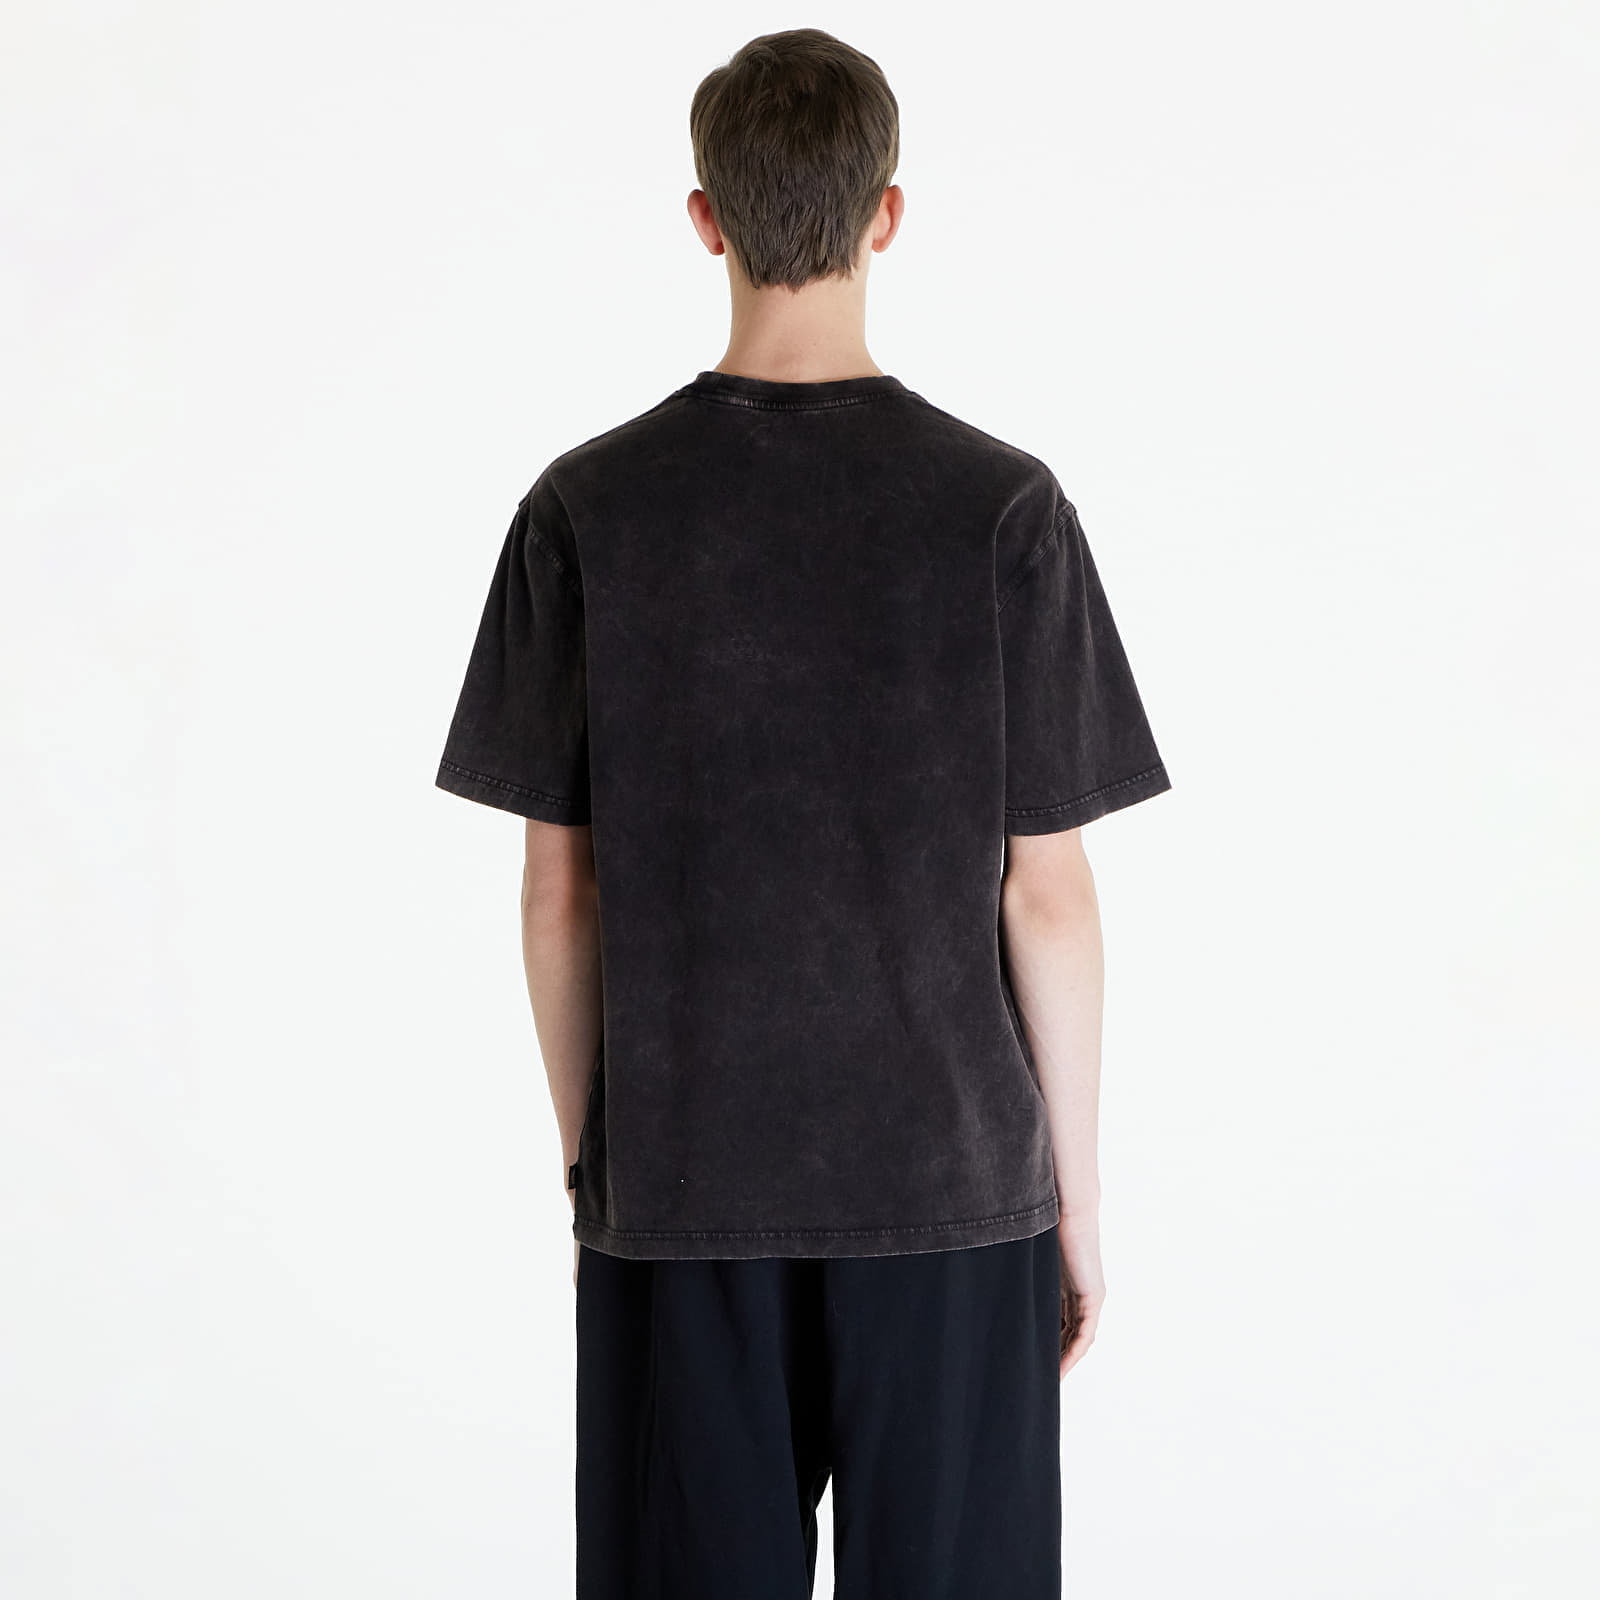 Newington Short Sleeve T-Shirt Man Black Size XS